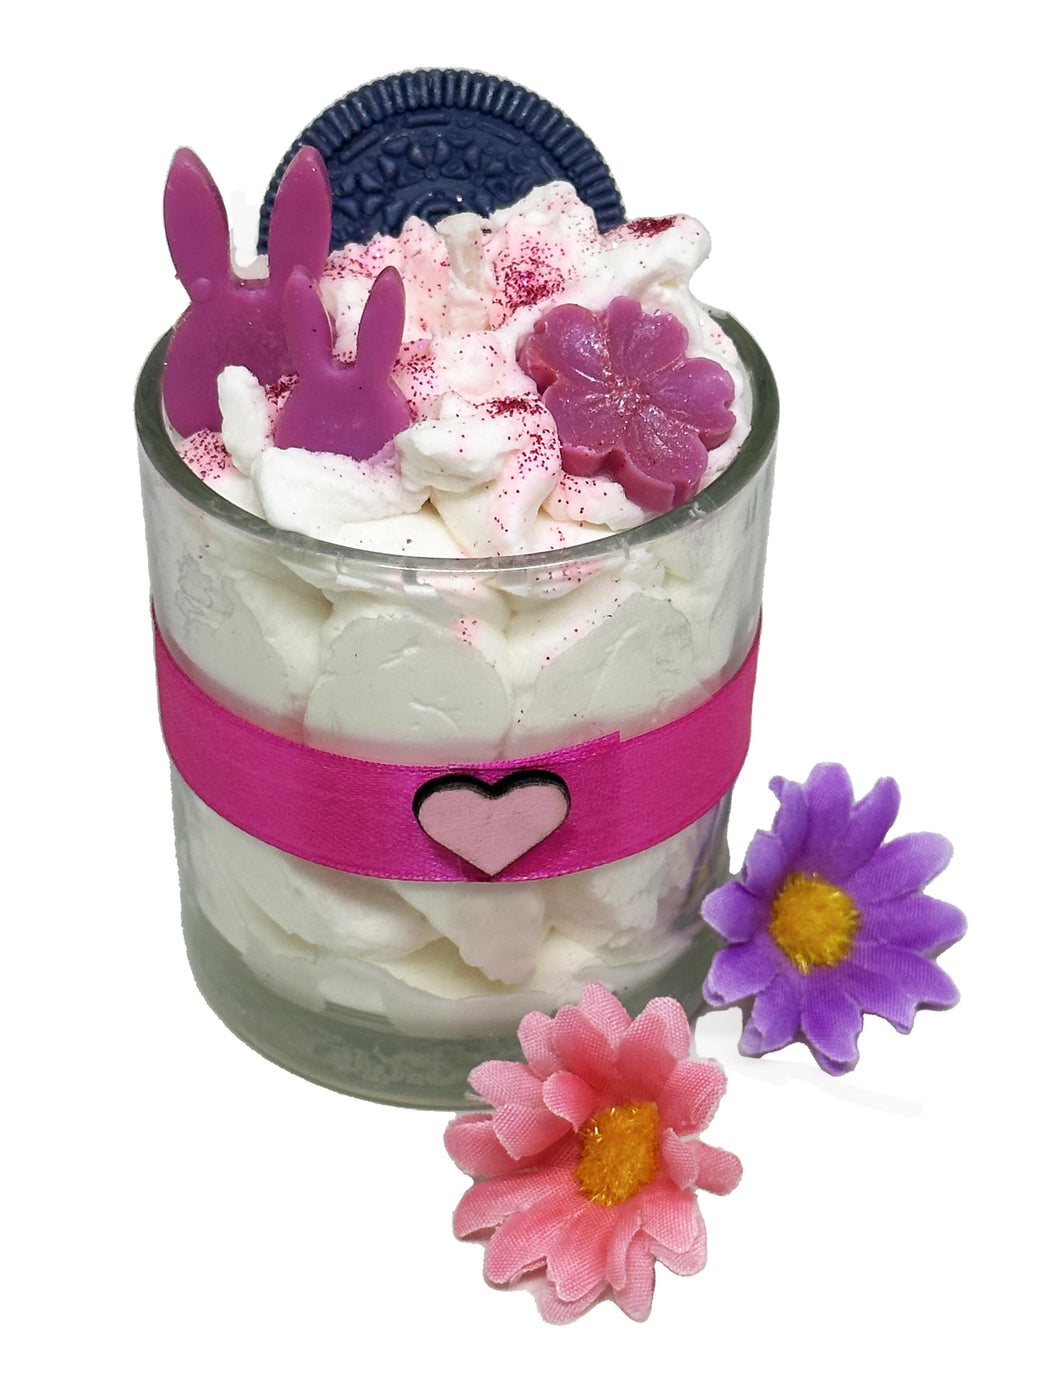 Bougie gourmande artisanale végétale parfumée cerise avec lapins roses dans verre.